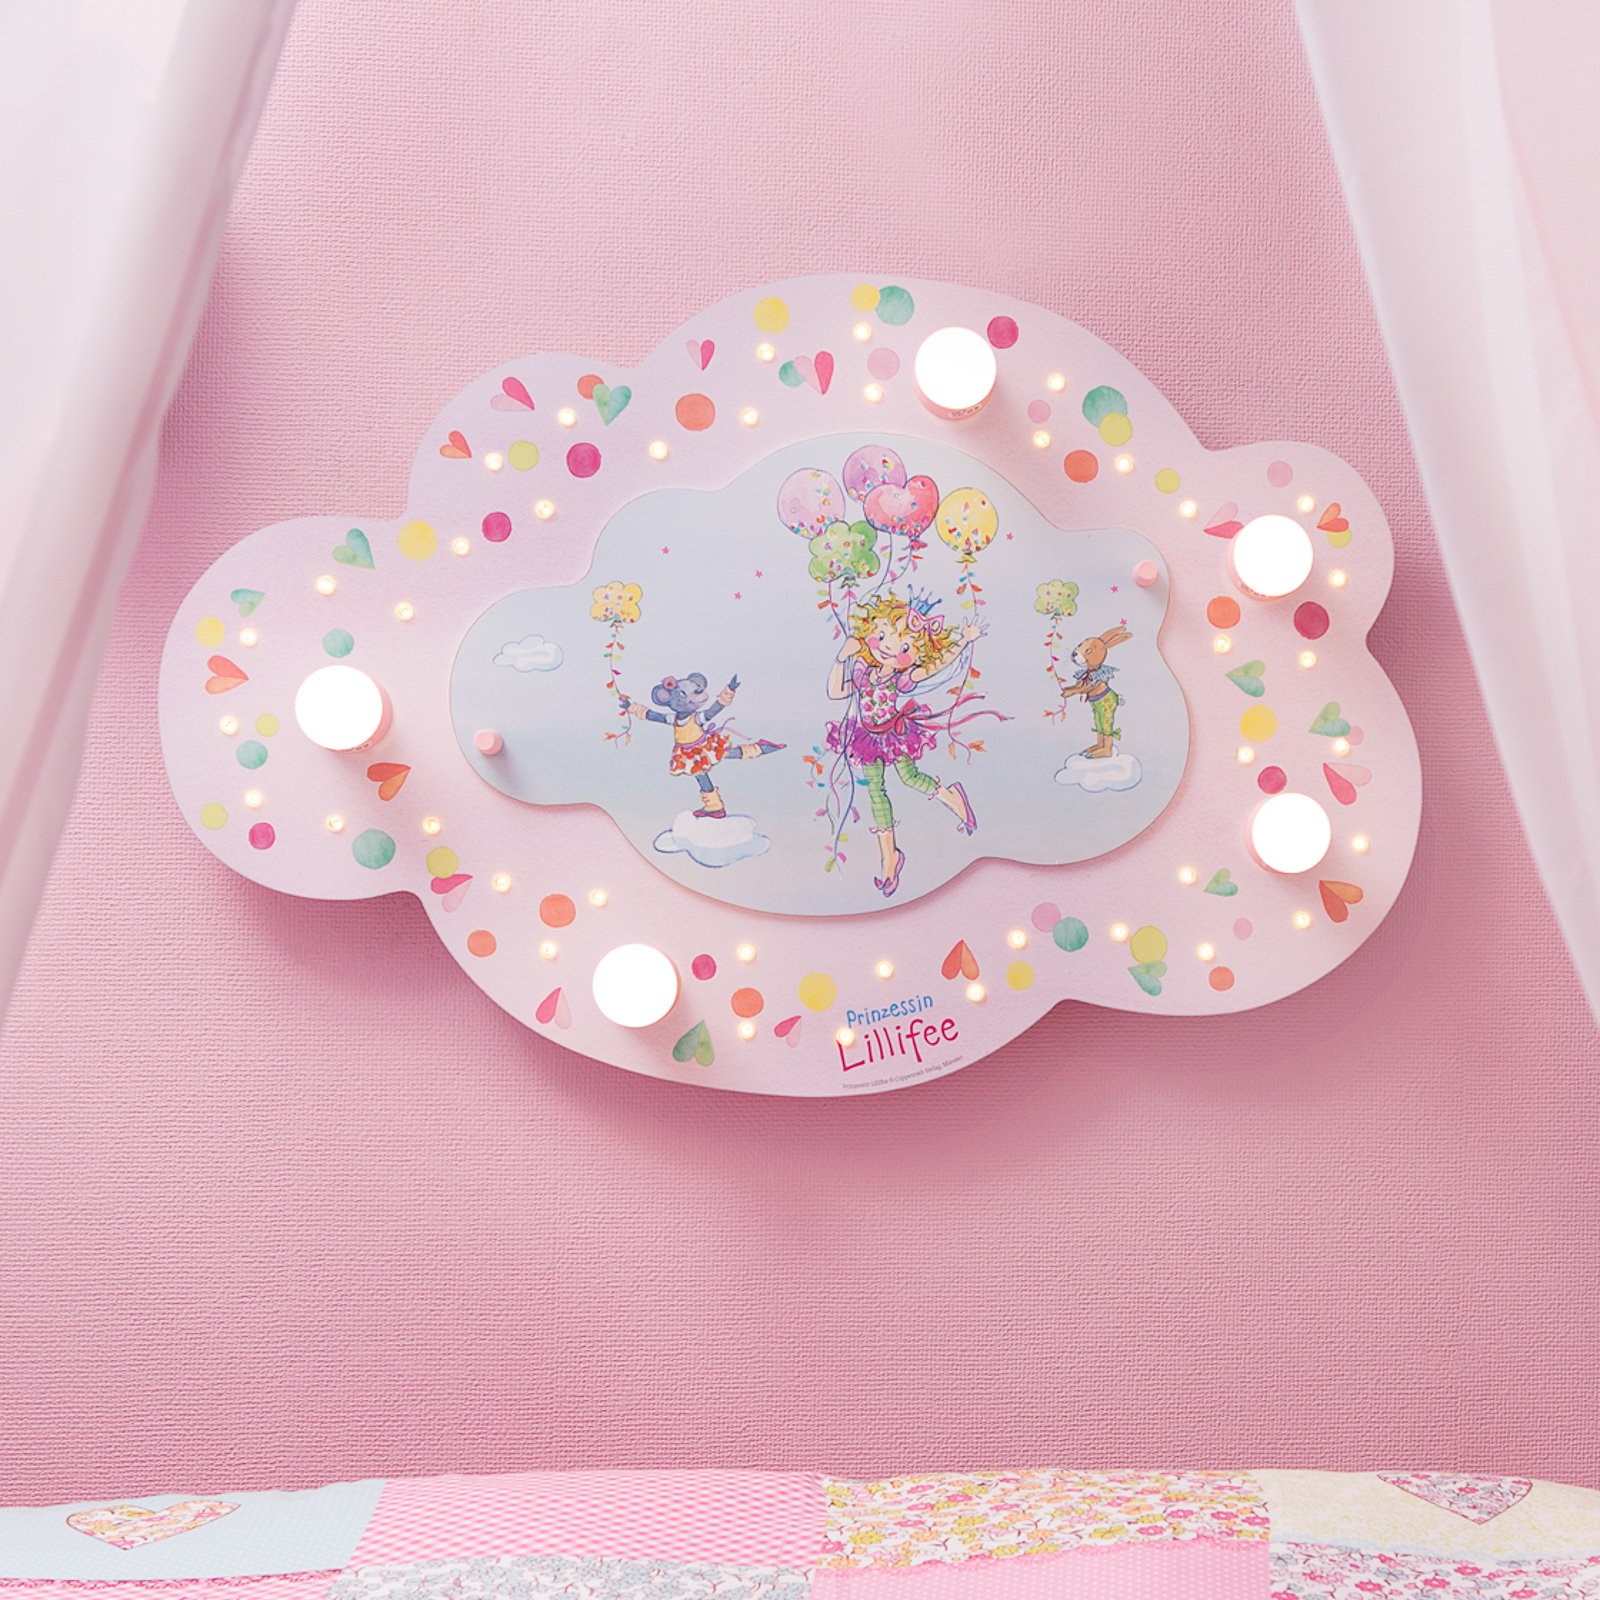 mennyezeti lámpa Princess Lillifee LED-ekkel Cloud